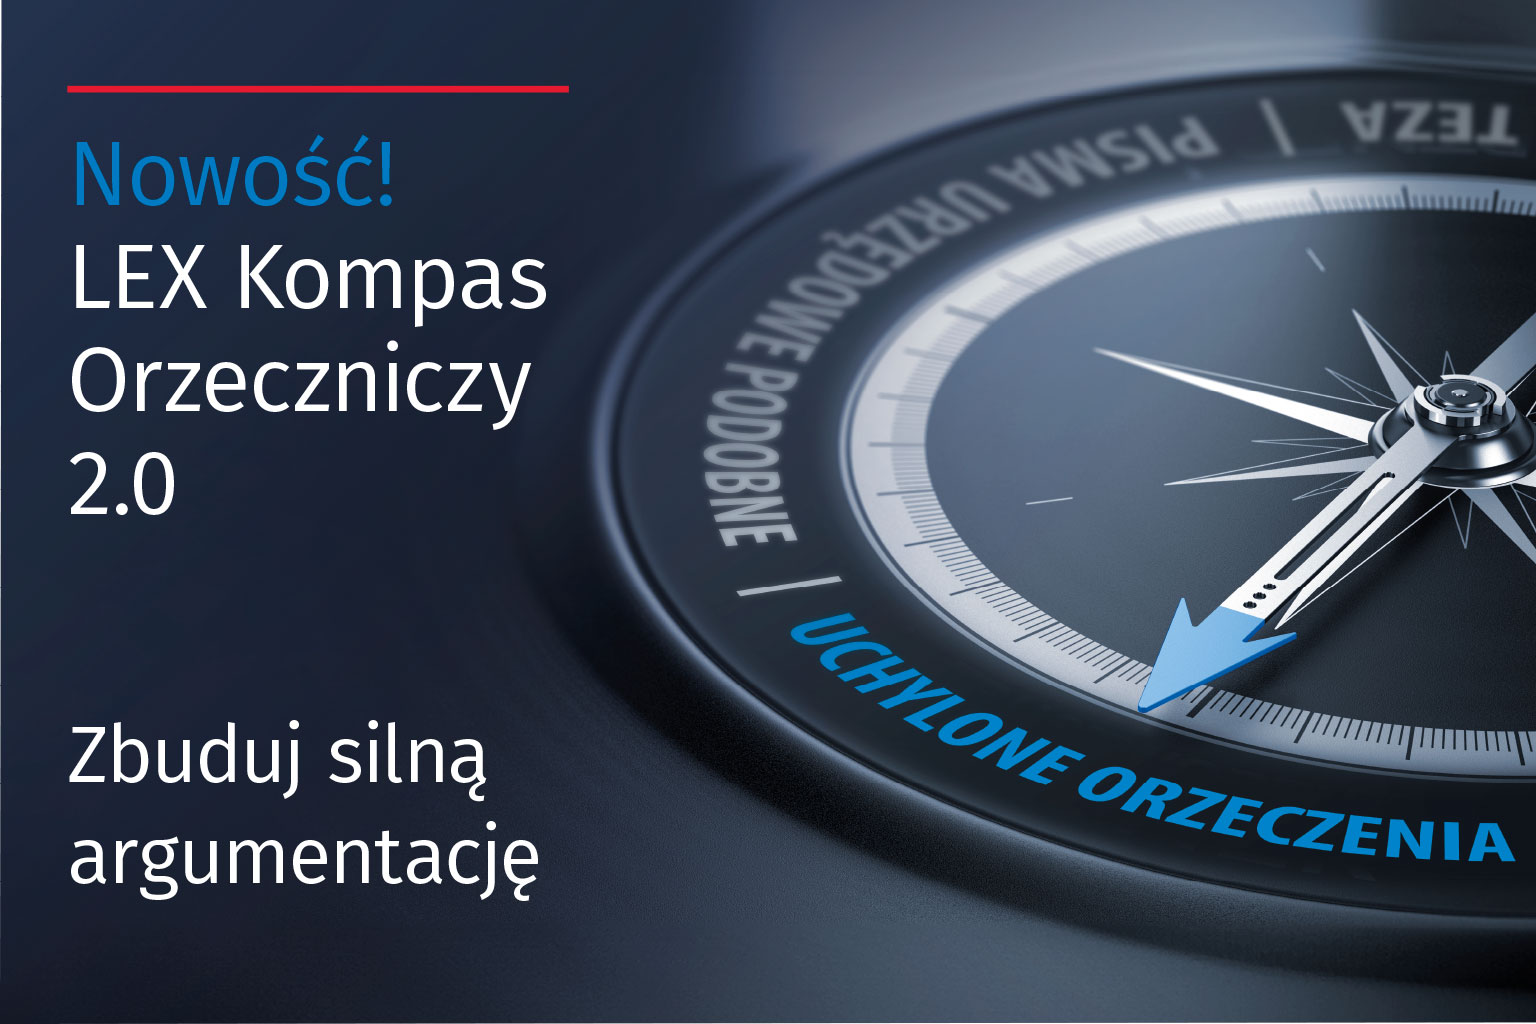 LEX Kompas Orzeczniczy 2.0